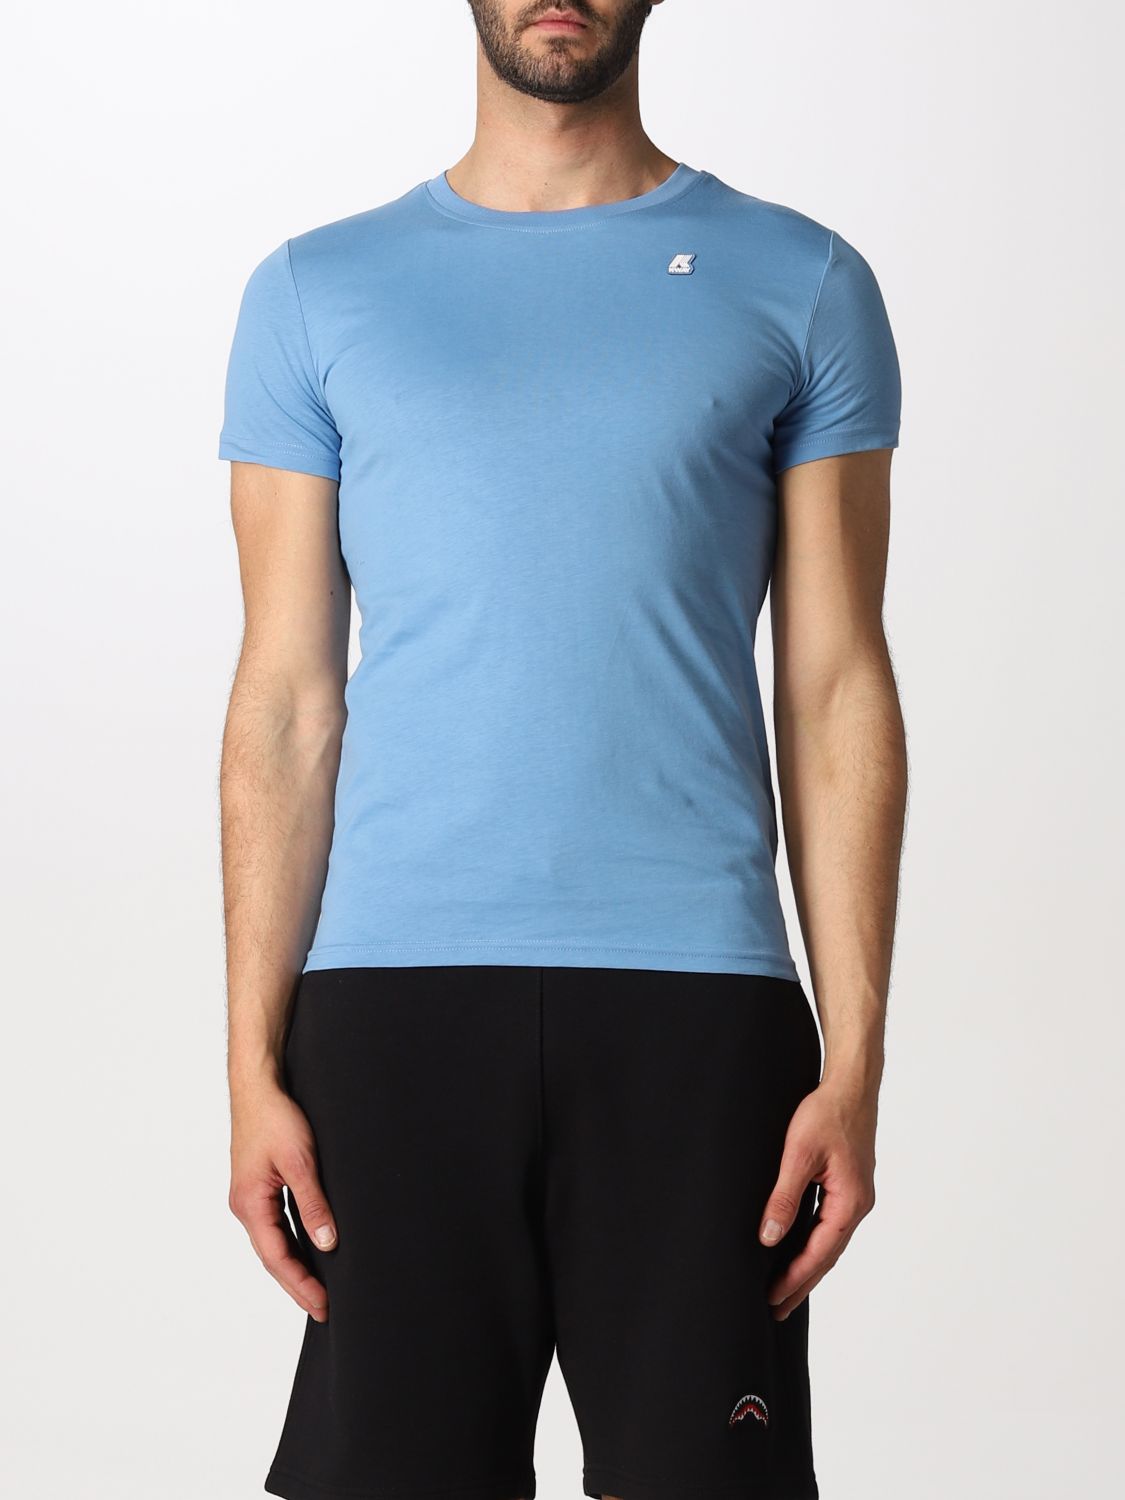 티셔츠 K-웨이: 티셔츠 남성 K-way 노드 블루 1